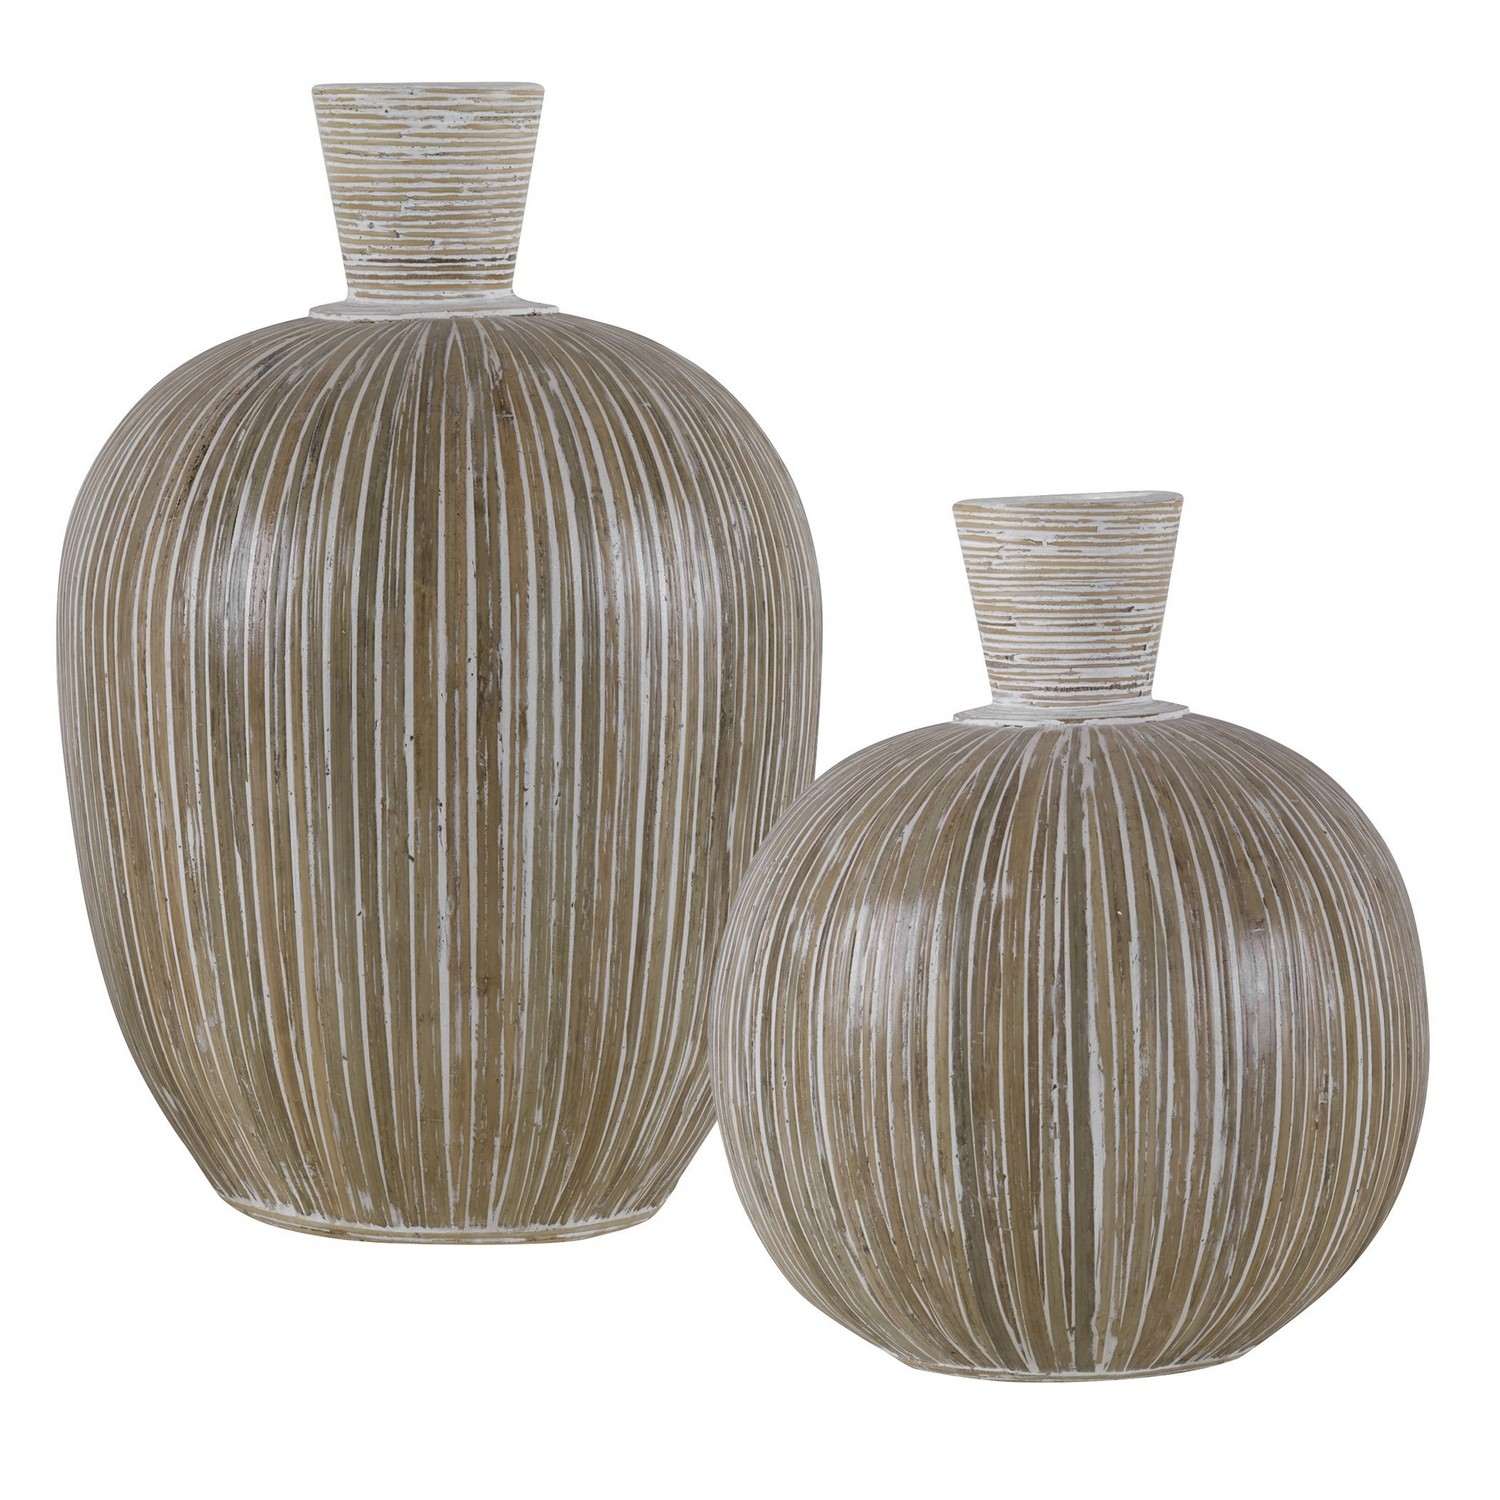 Uttermost Islander Vases - Set of 2 - White Washed